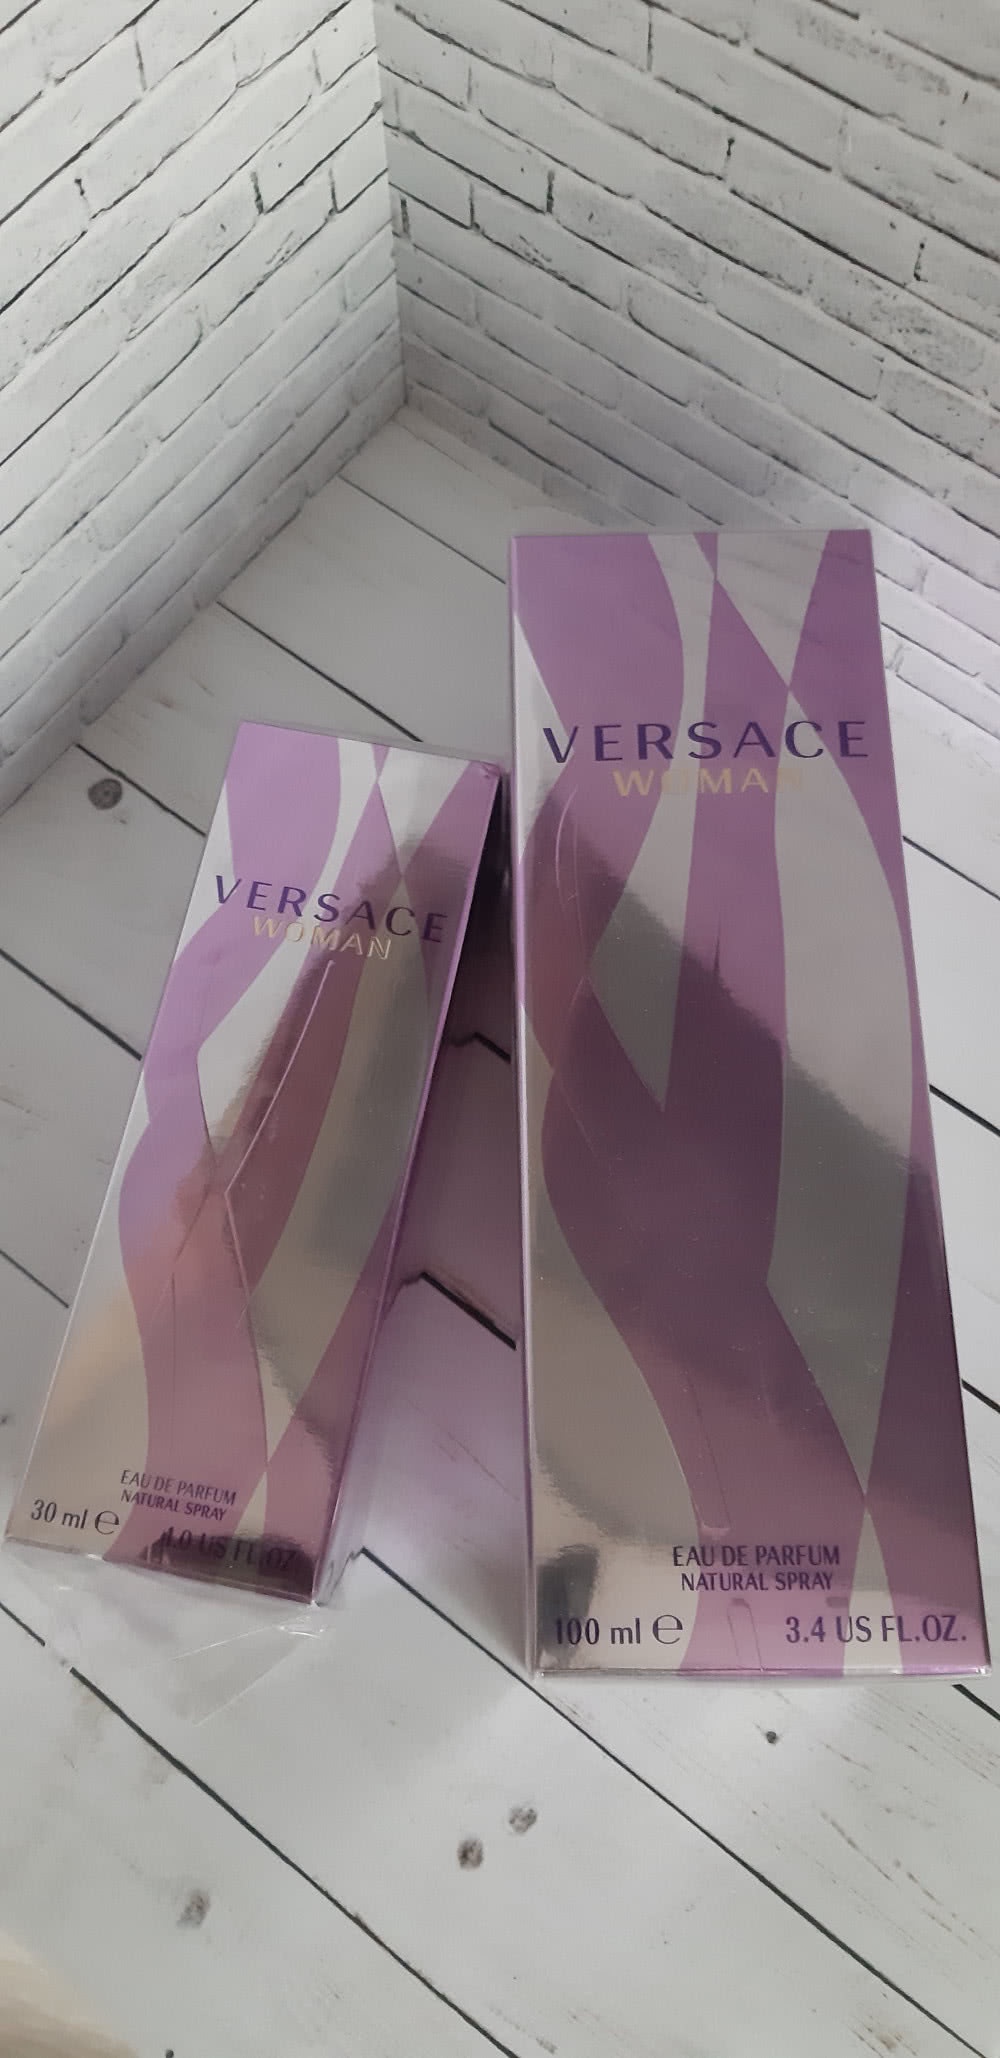 Versace woman парфюмерная вода 100мл